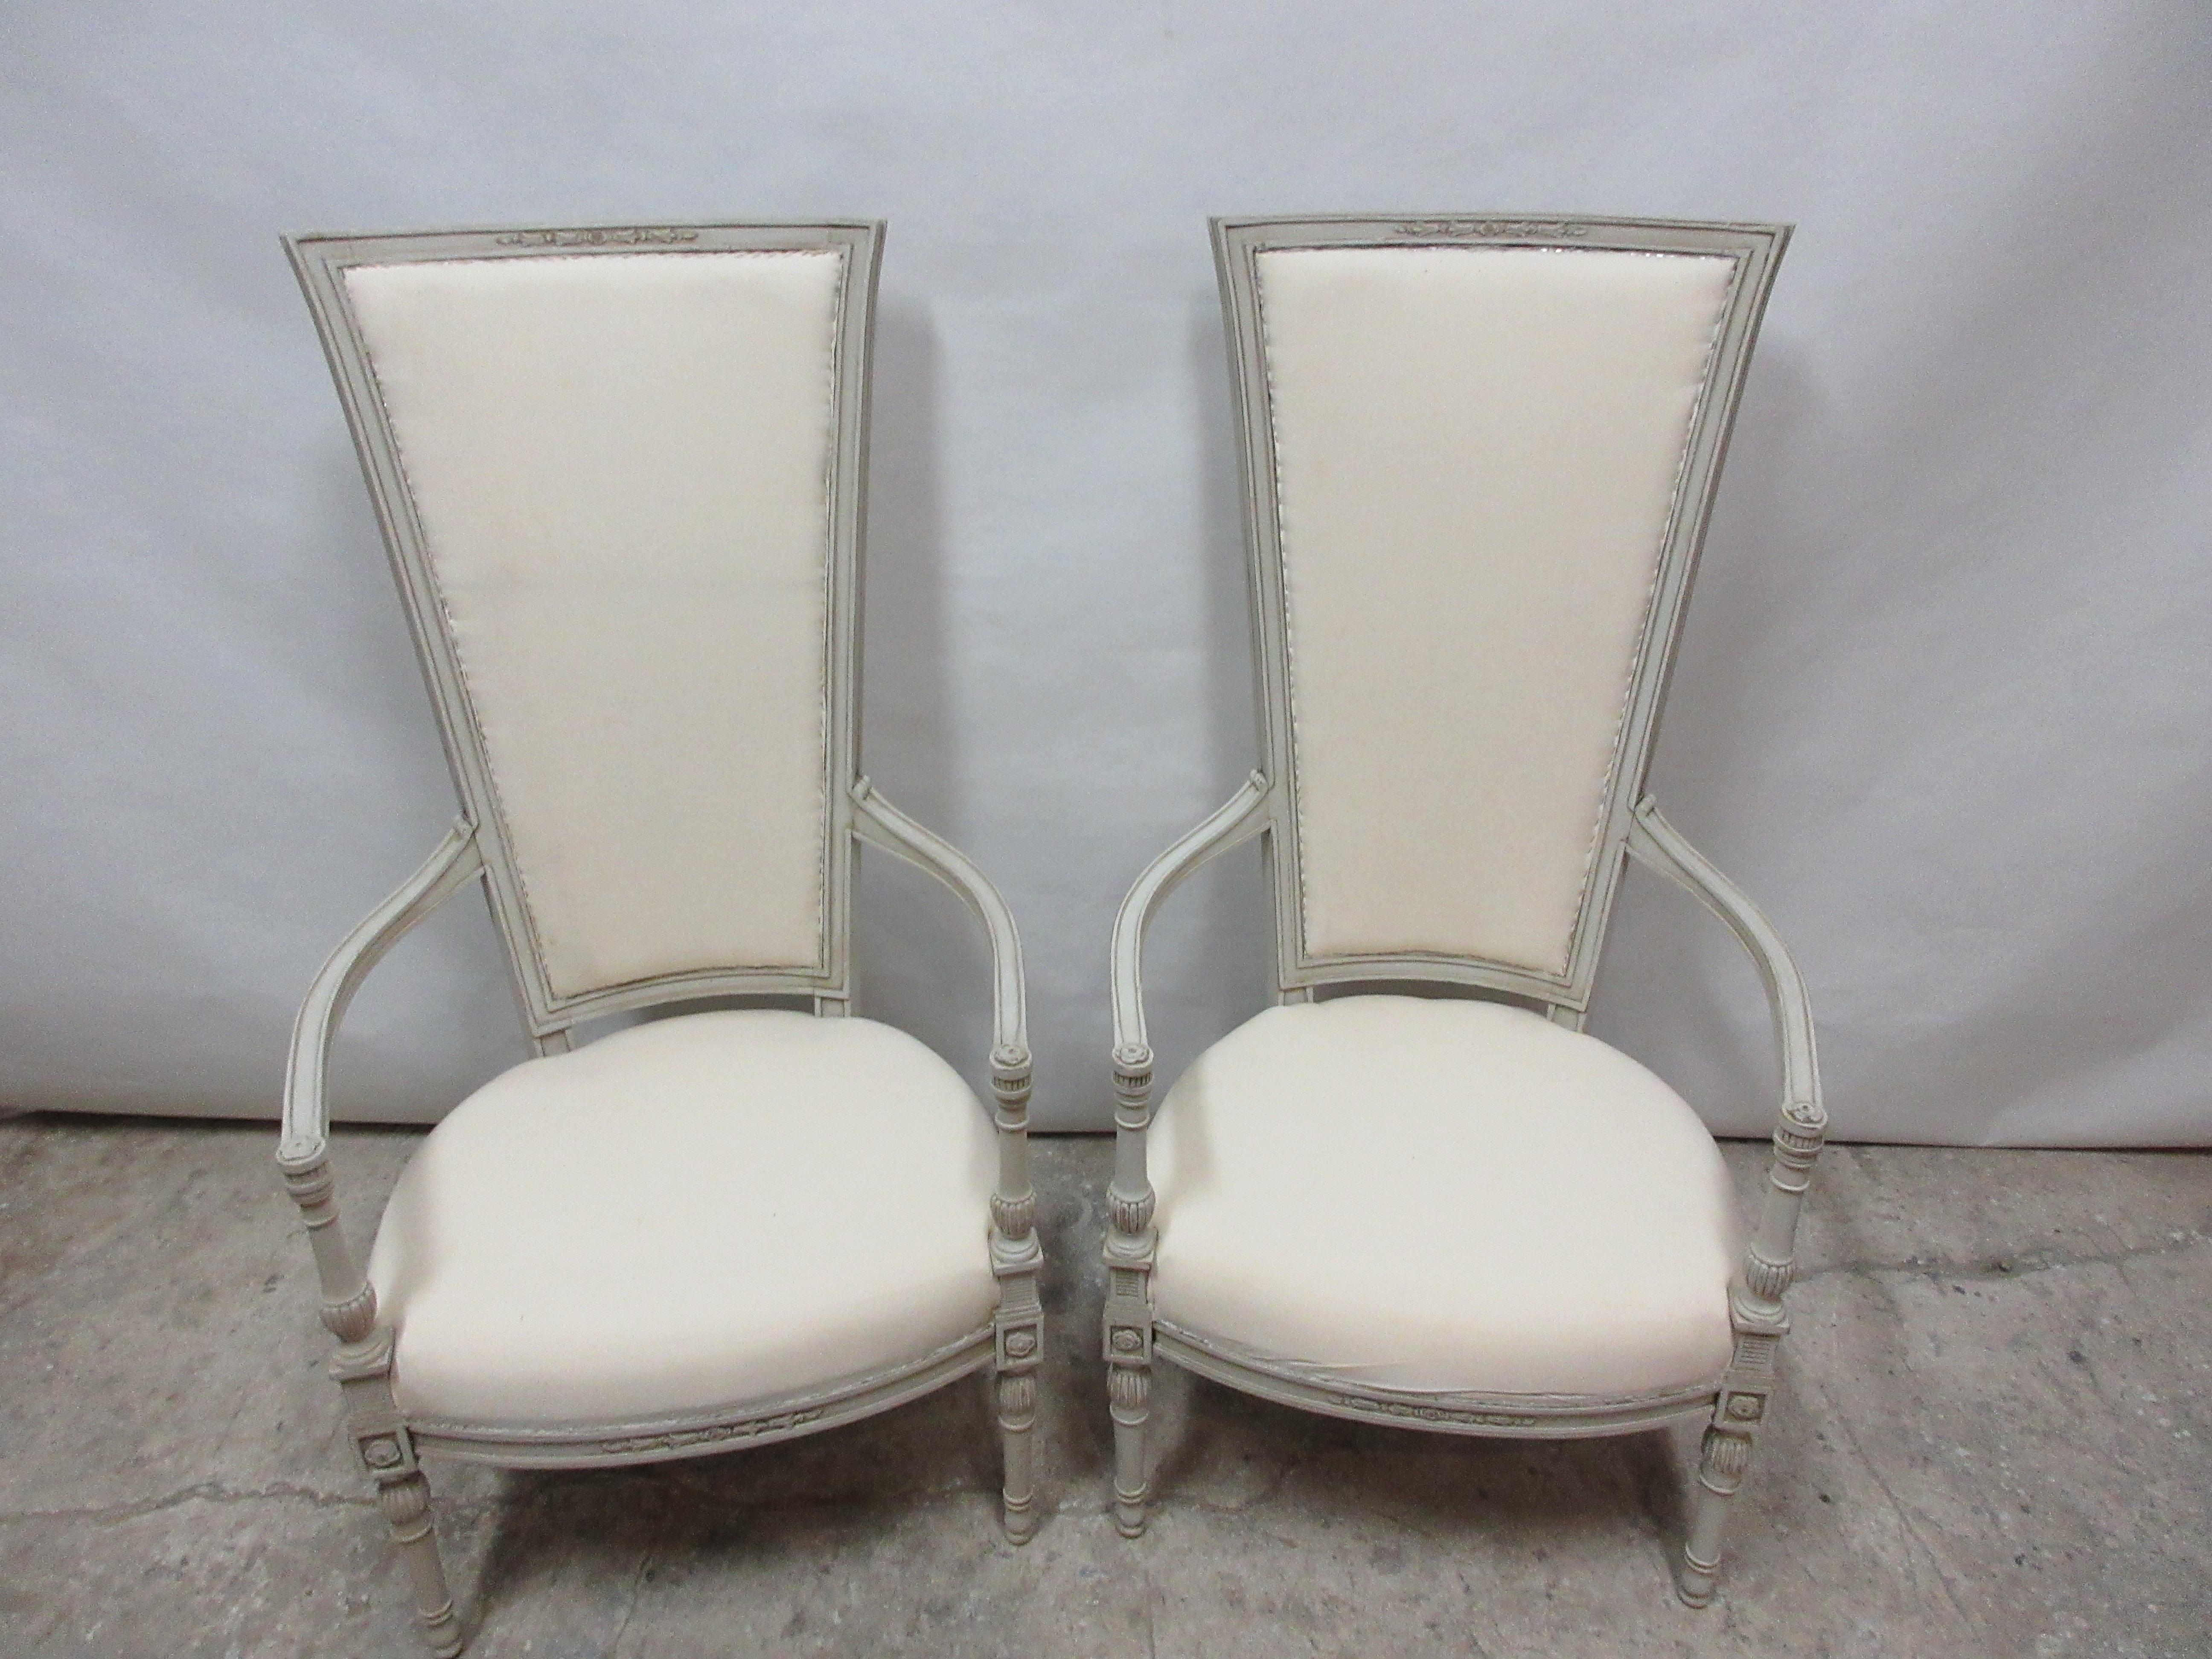 Dies ist ein Satz von 2 Sesseln mit hoher Rückenlehne im gustavianischen Stil. Sie wurden restauriert und mit Milchfarben 